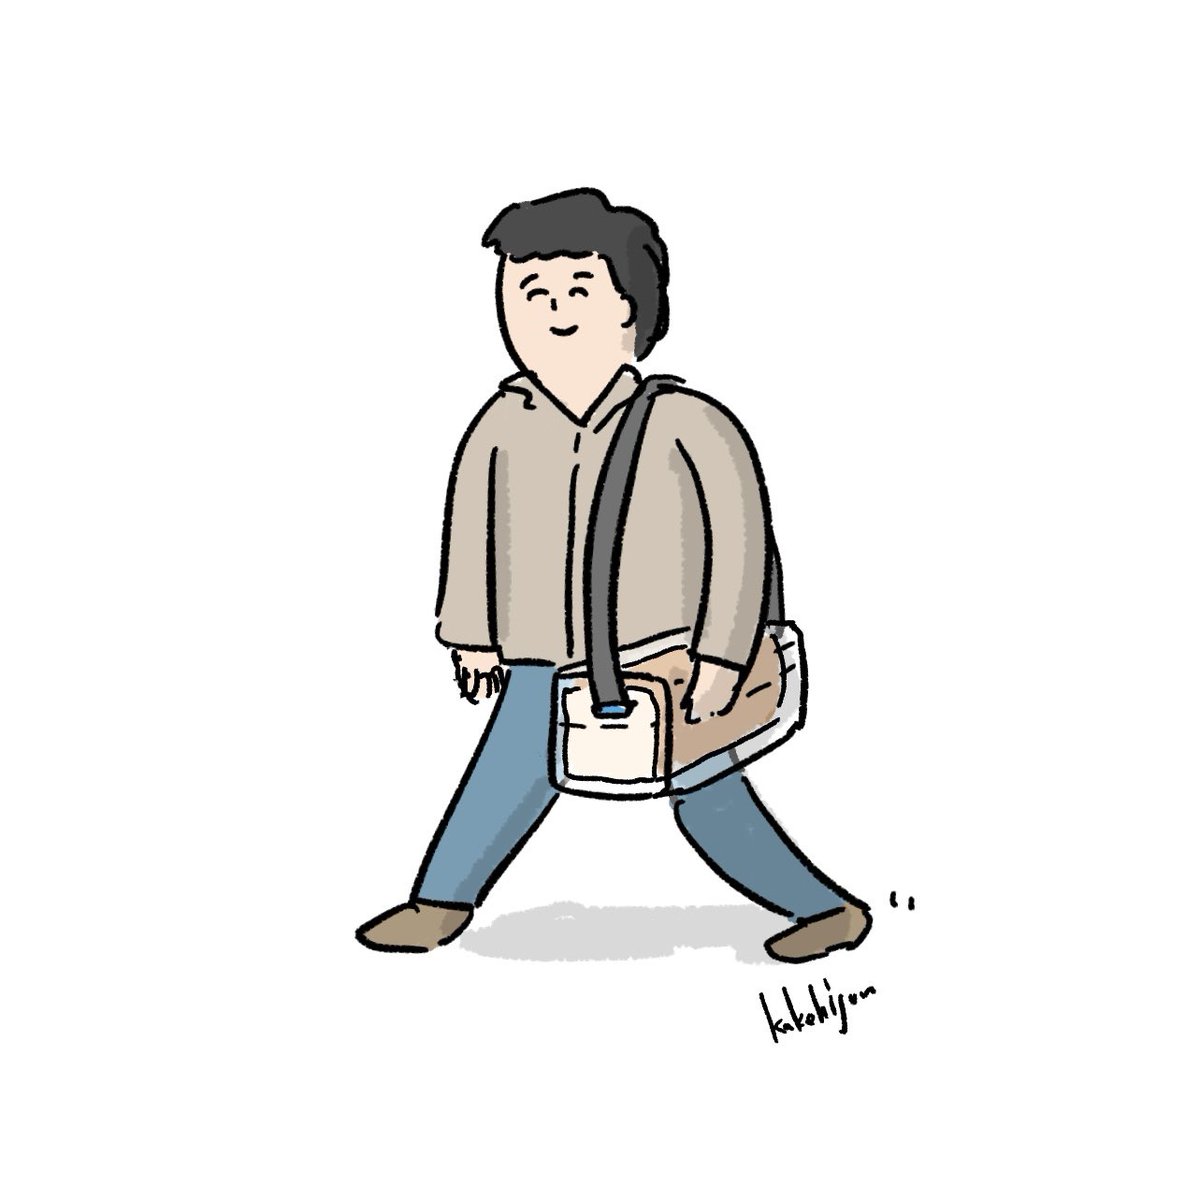 「食パン3斤をクリアケースに入れて持ち運ぶ人」|カケヒジュン@イラストレーターのイラスト